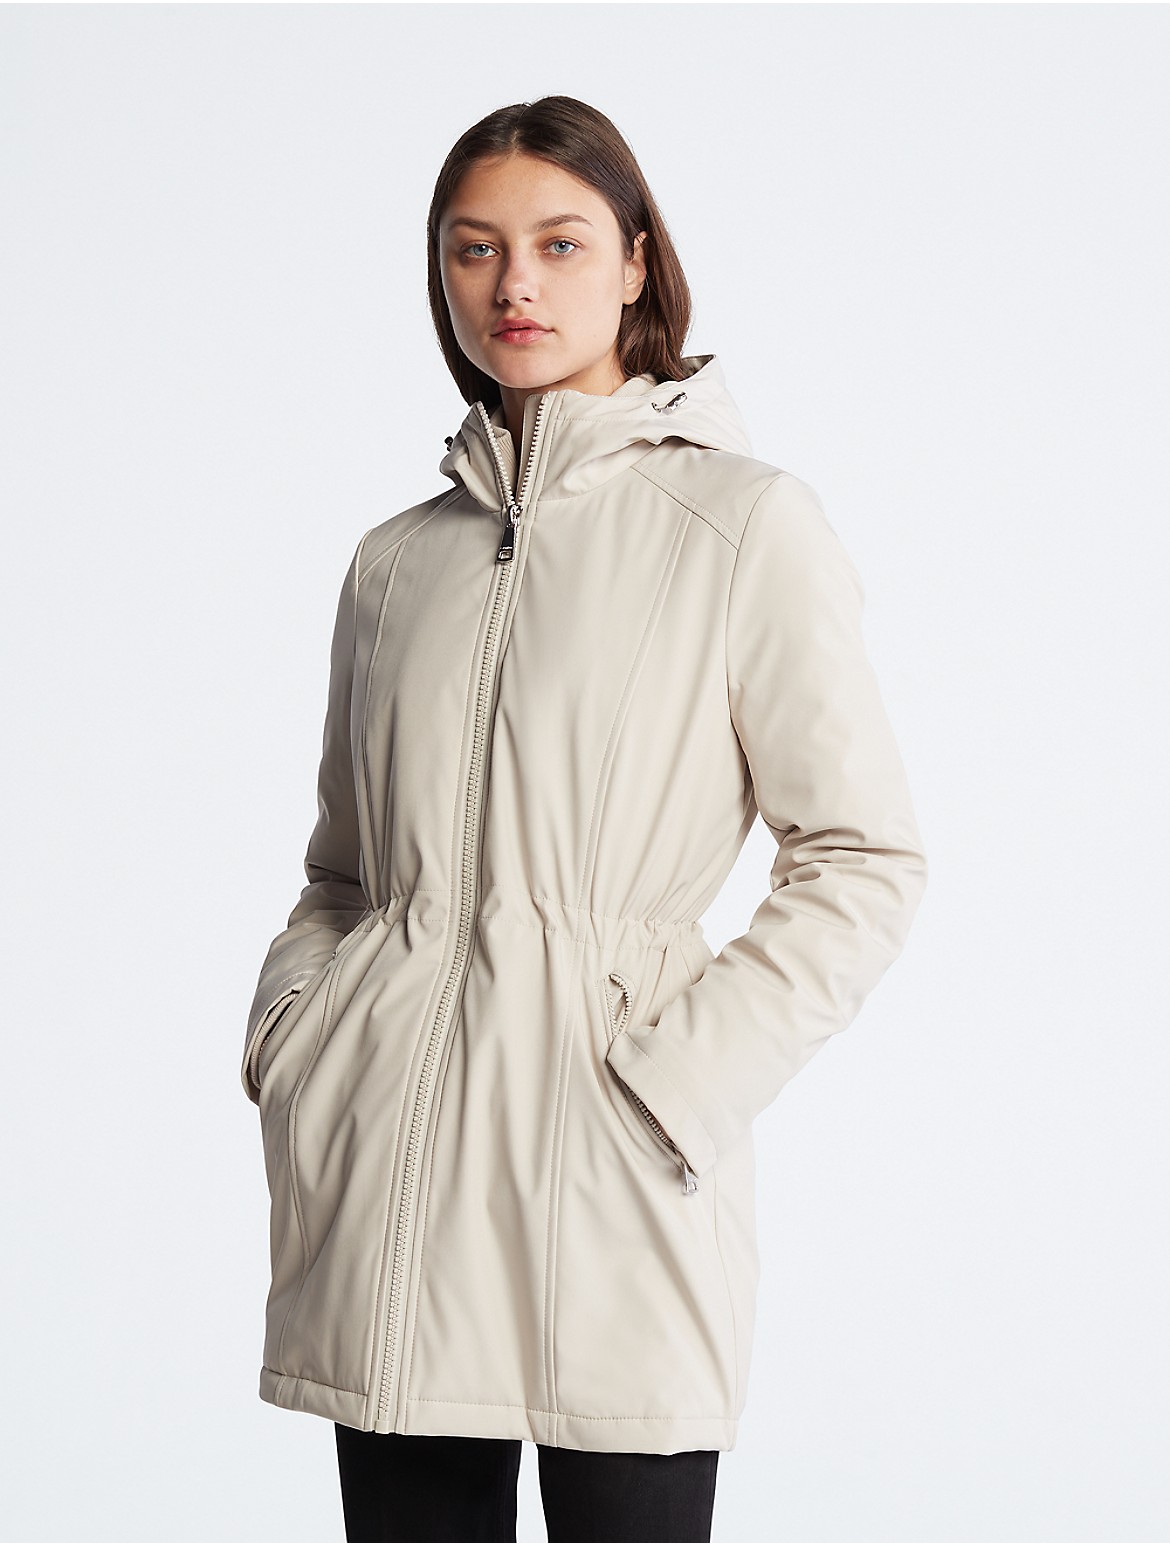 Calvin Klein Women's Cinched Waist Anorak Jacket - Neutral - XL